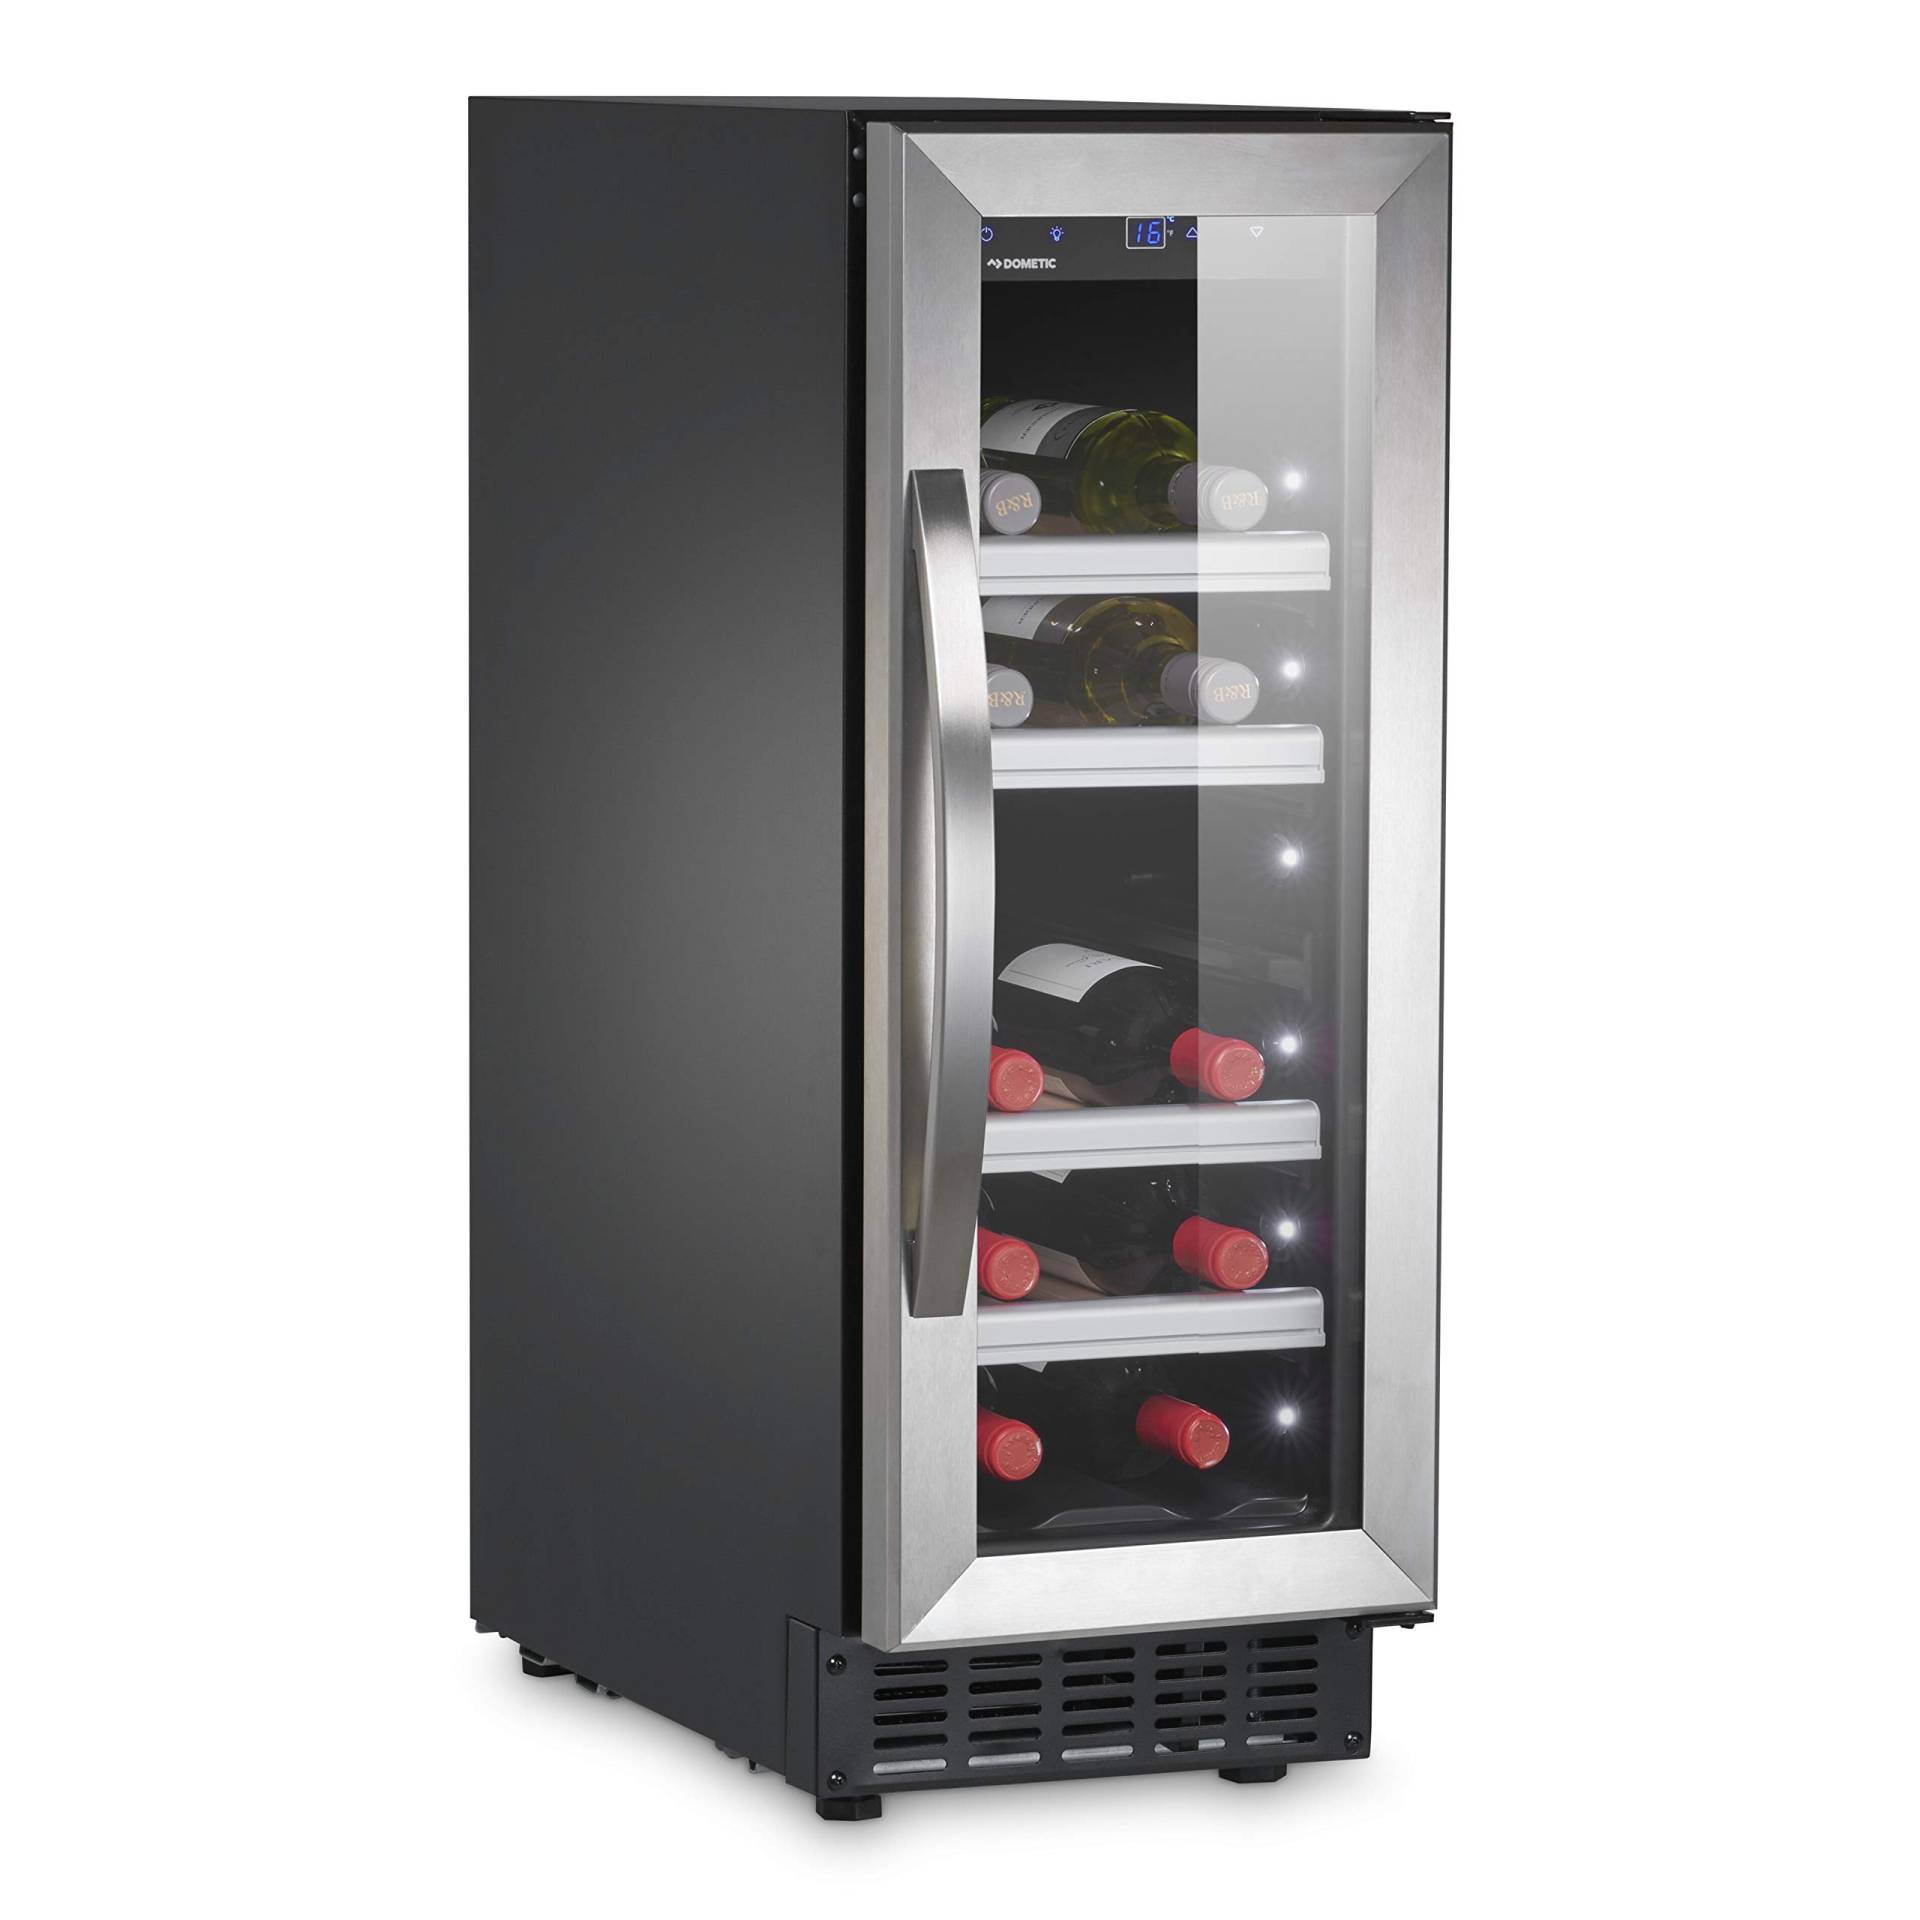 DOMETIC C20G Kompressor-Weinkühlschrank mit Glastür für 20 Flaschen ideal für die Wein-Präsentation in Restaurants, Bistros oder Hotels von DOMETIC